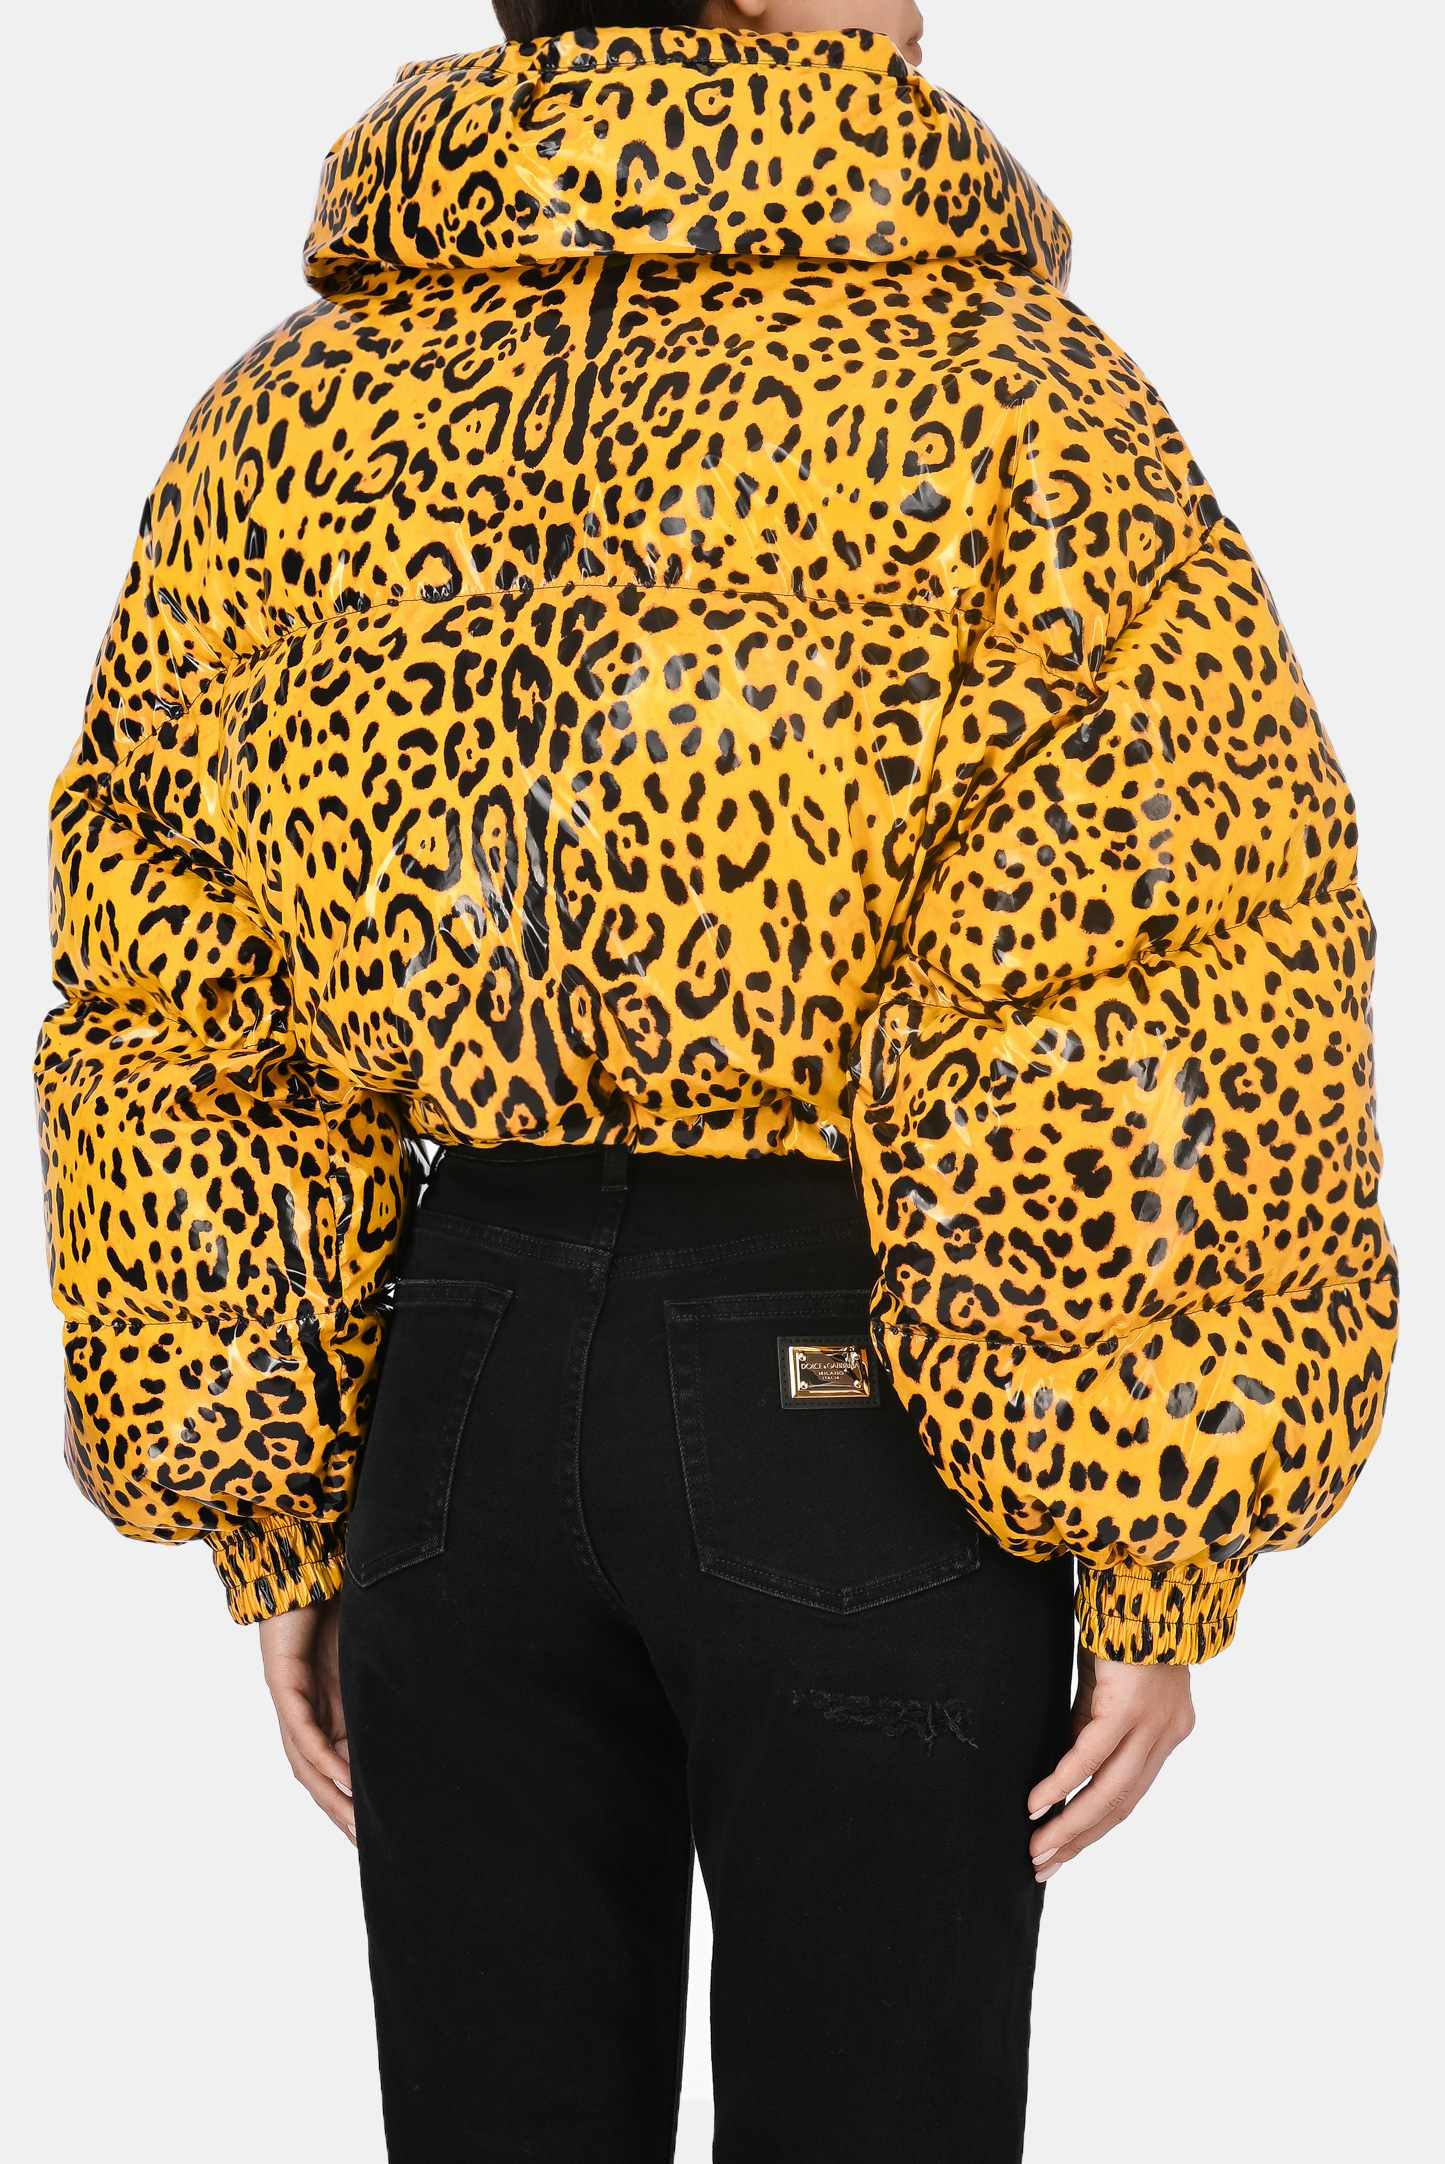 Куртка DOLCE & GABBANA F9L95T FSRNH, цвет: Леопардовый, Женский